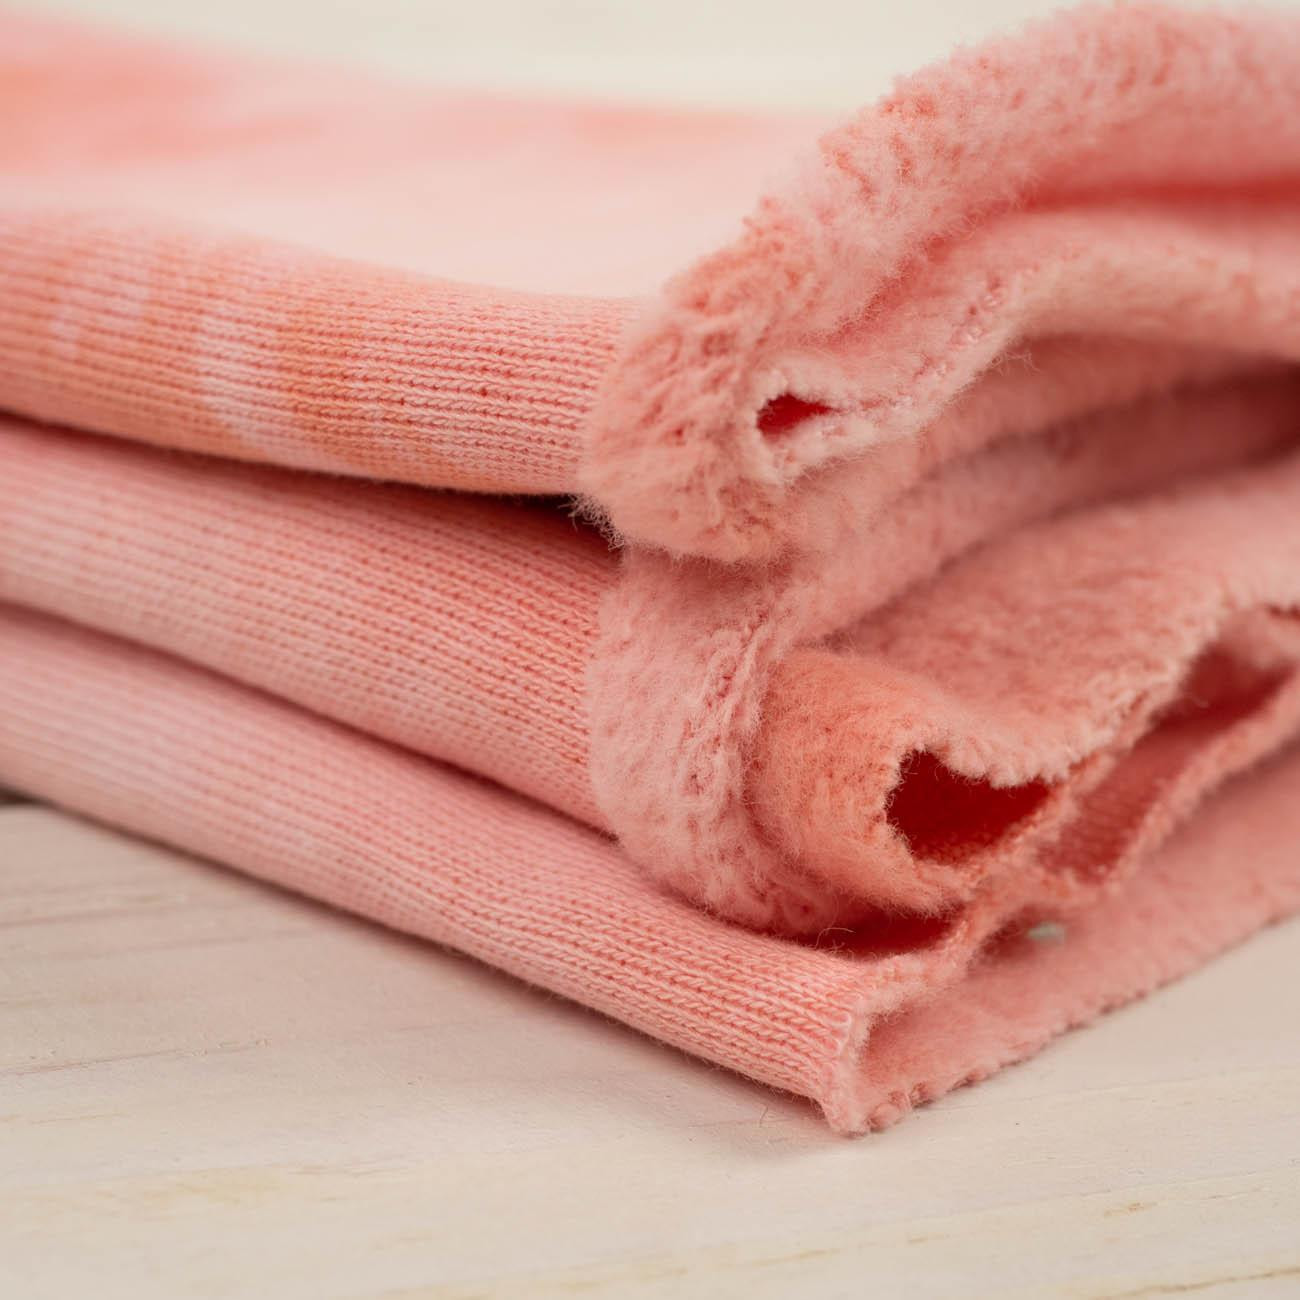 BATIK pat. 2 / pink - brushed knitwear with elastane